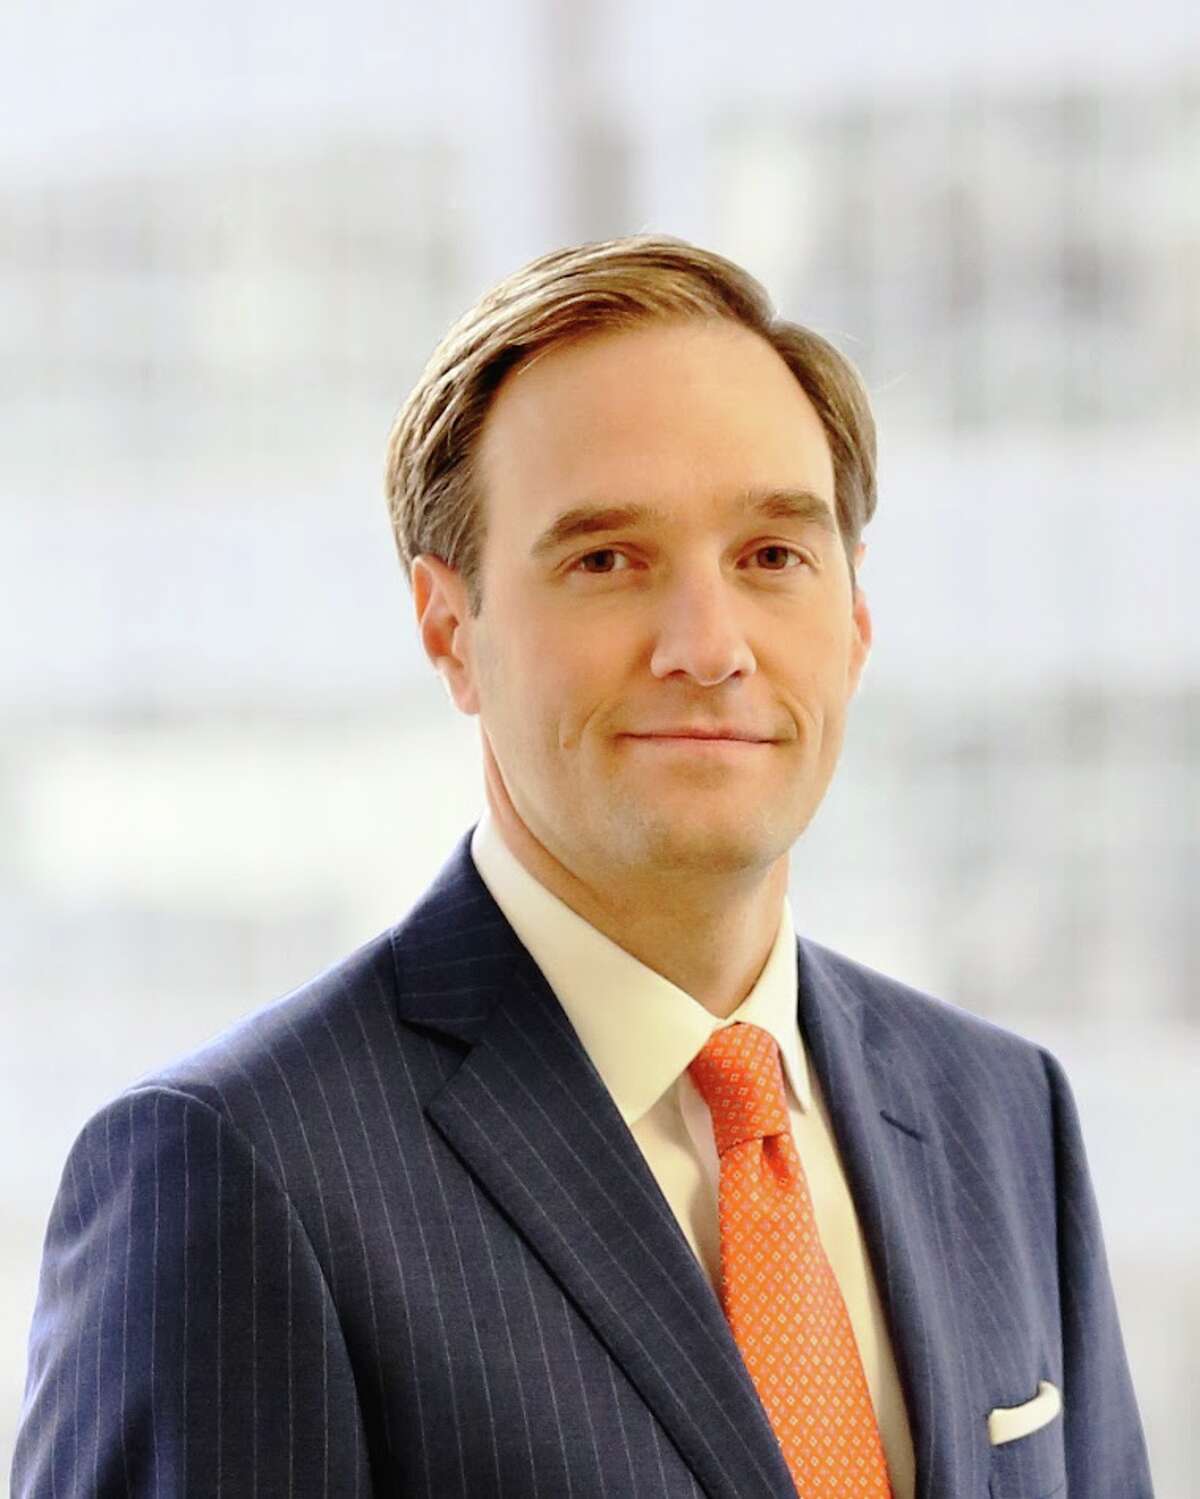 David E. Wynne has formed a new litigation firm, Burdine Wynne, along with Scott G. Burdine.